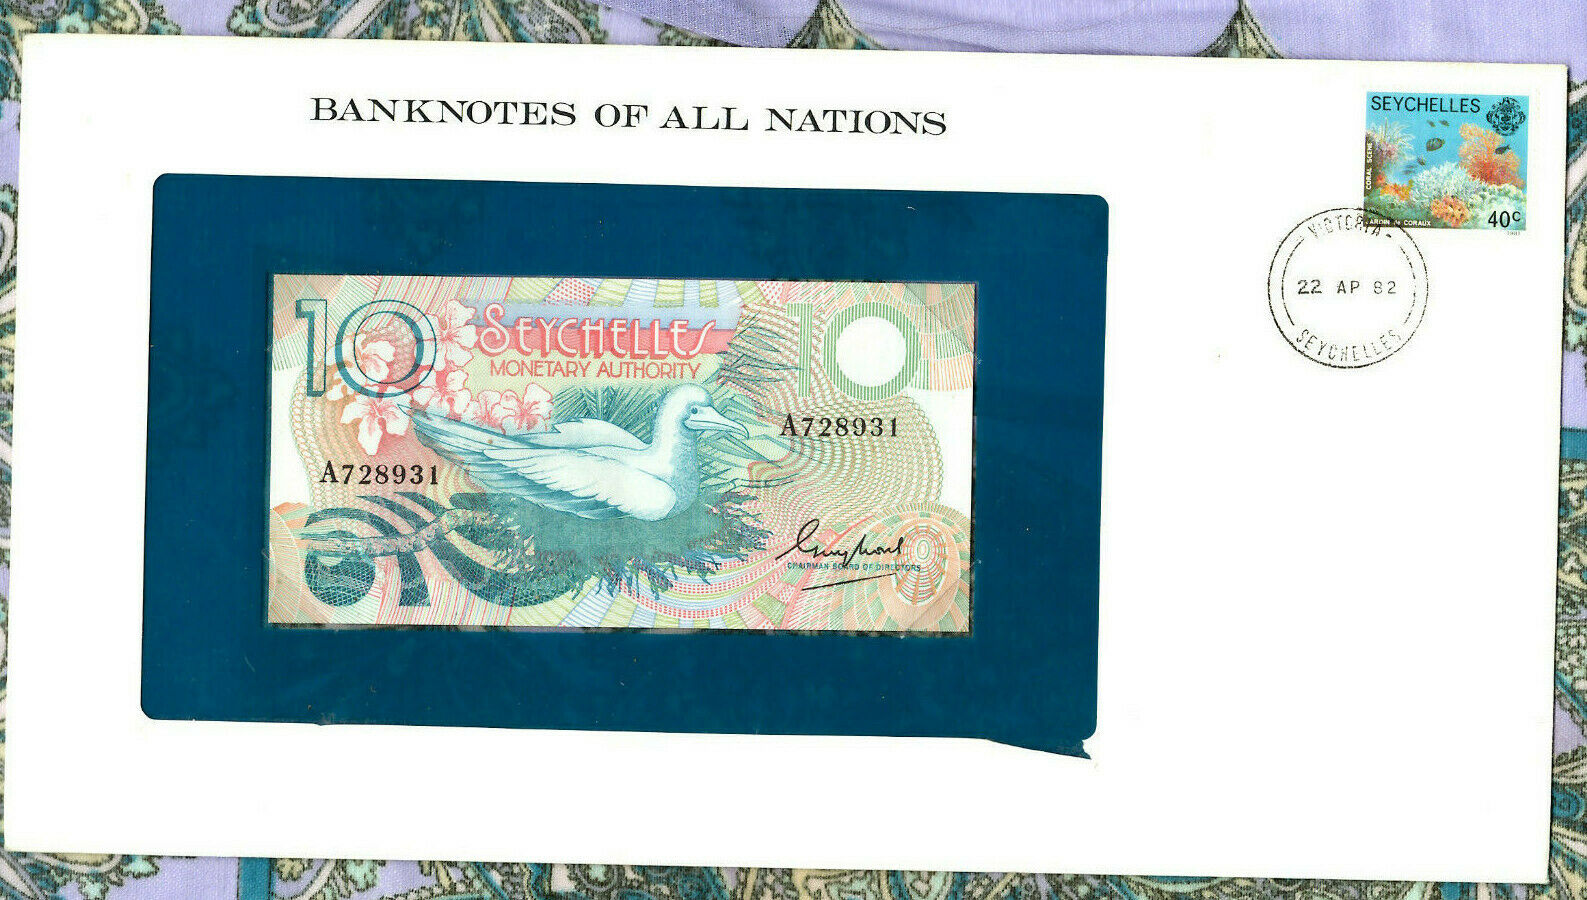 *banknotes Of All Nations Seychelles 1979 10 Rupees P-23a Unc Prefix A*